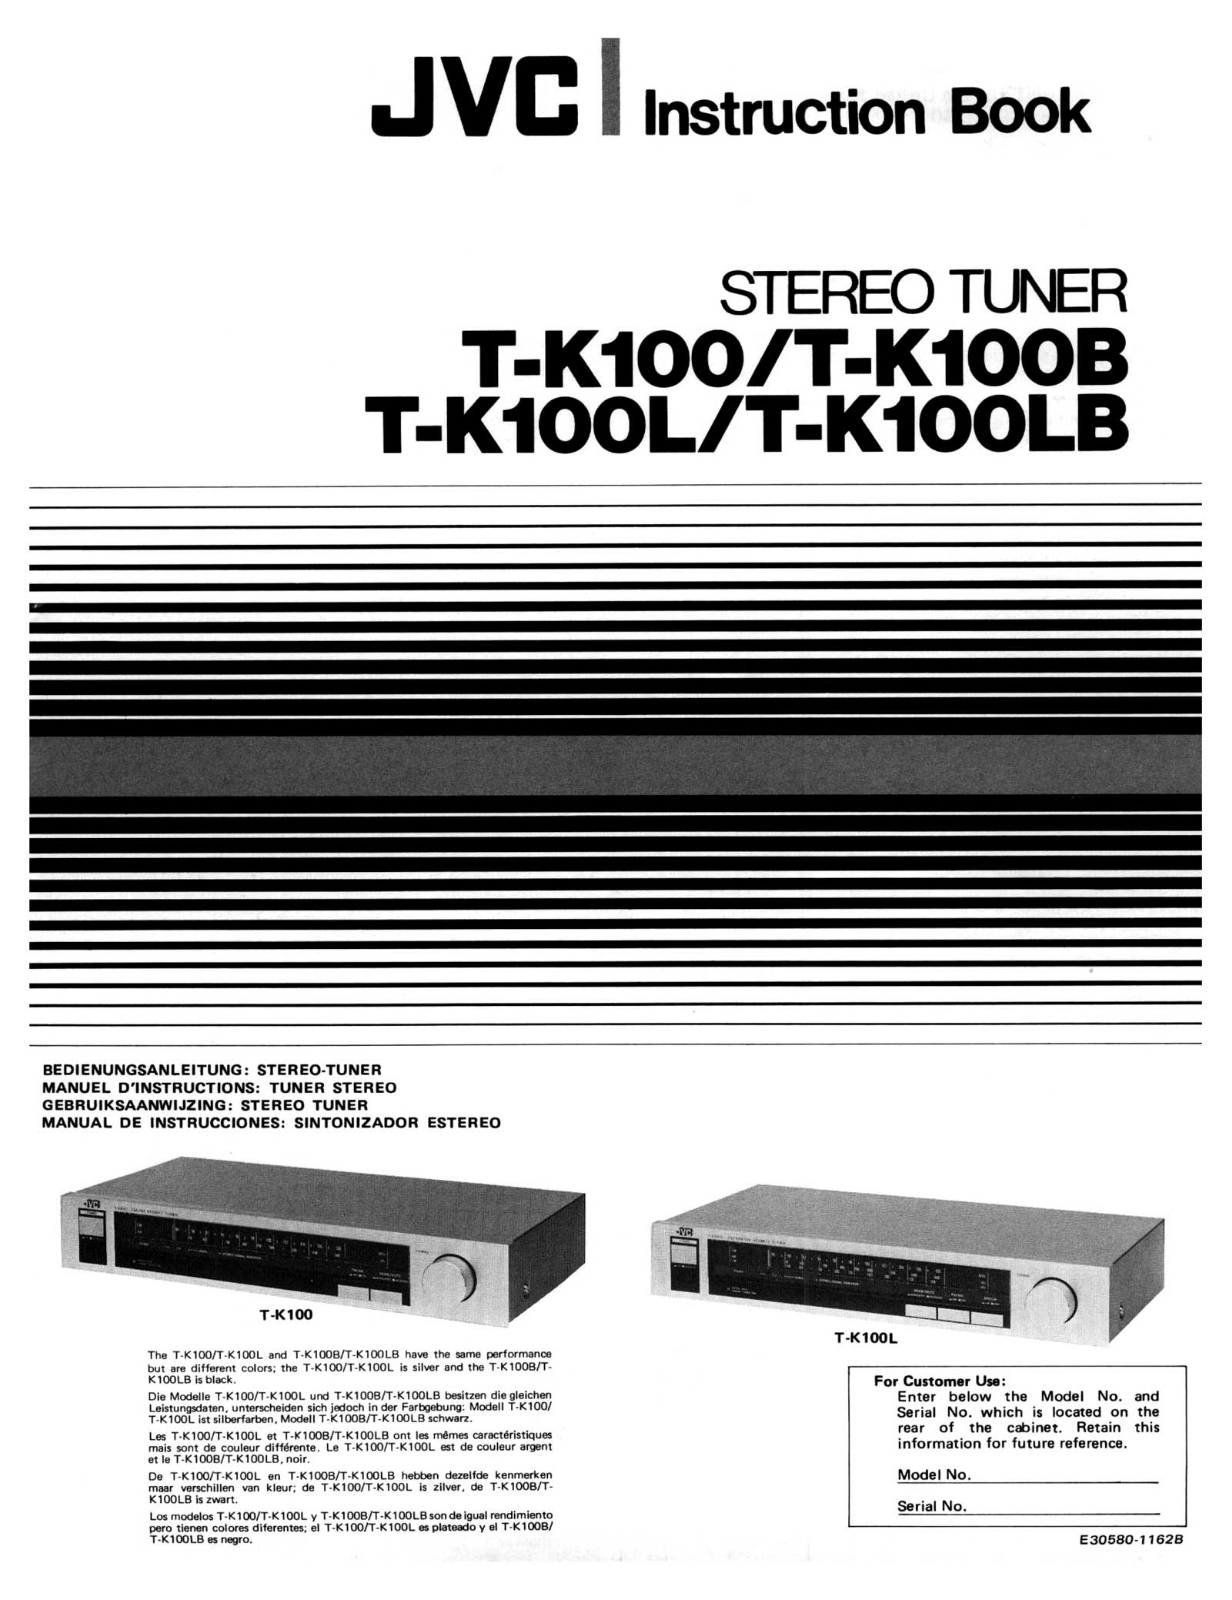 Jvc TK-100-LB, TK-100-L, TK-100-B, TK-100 Owners Manual